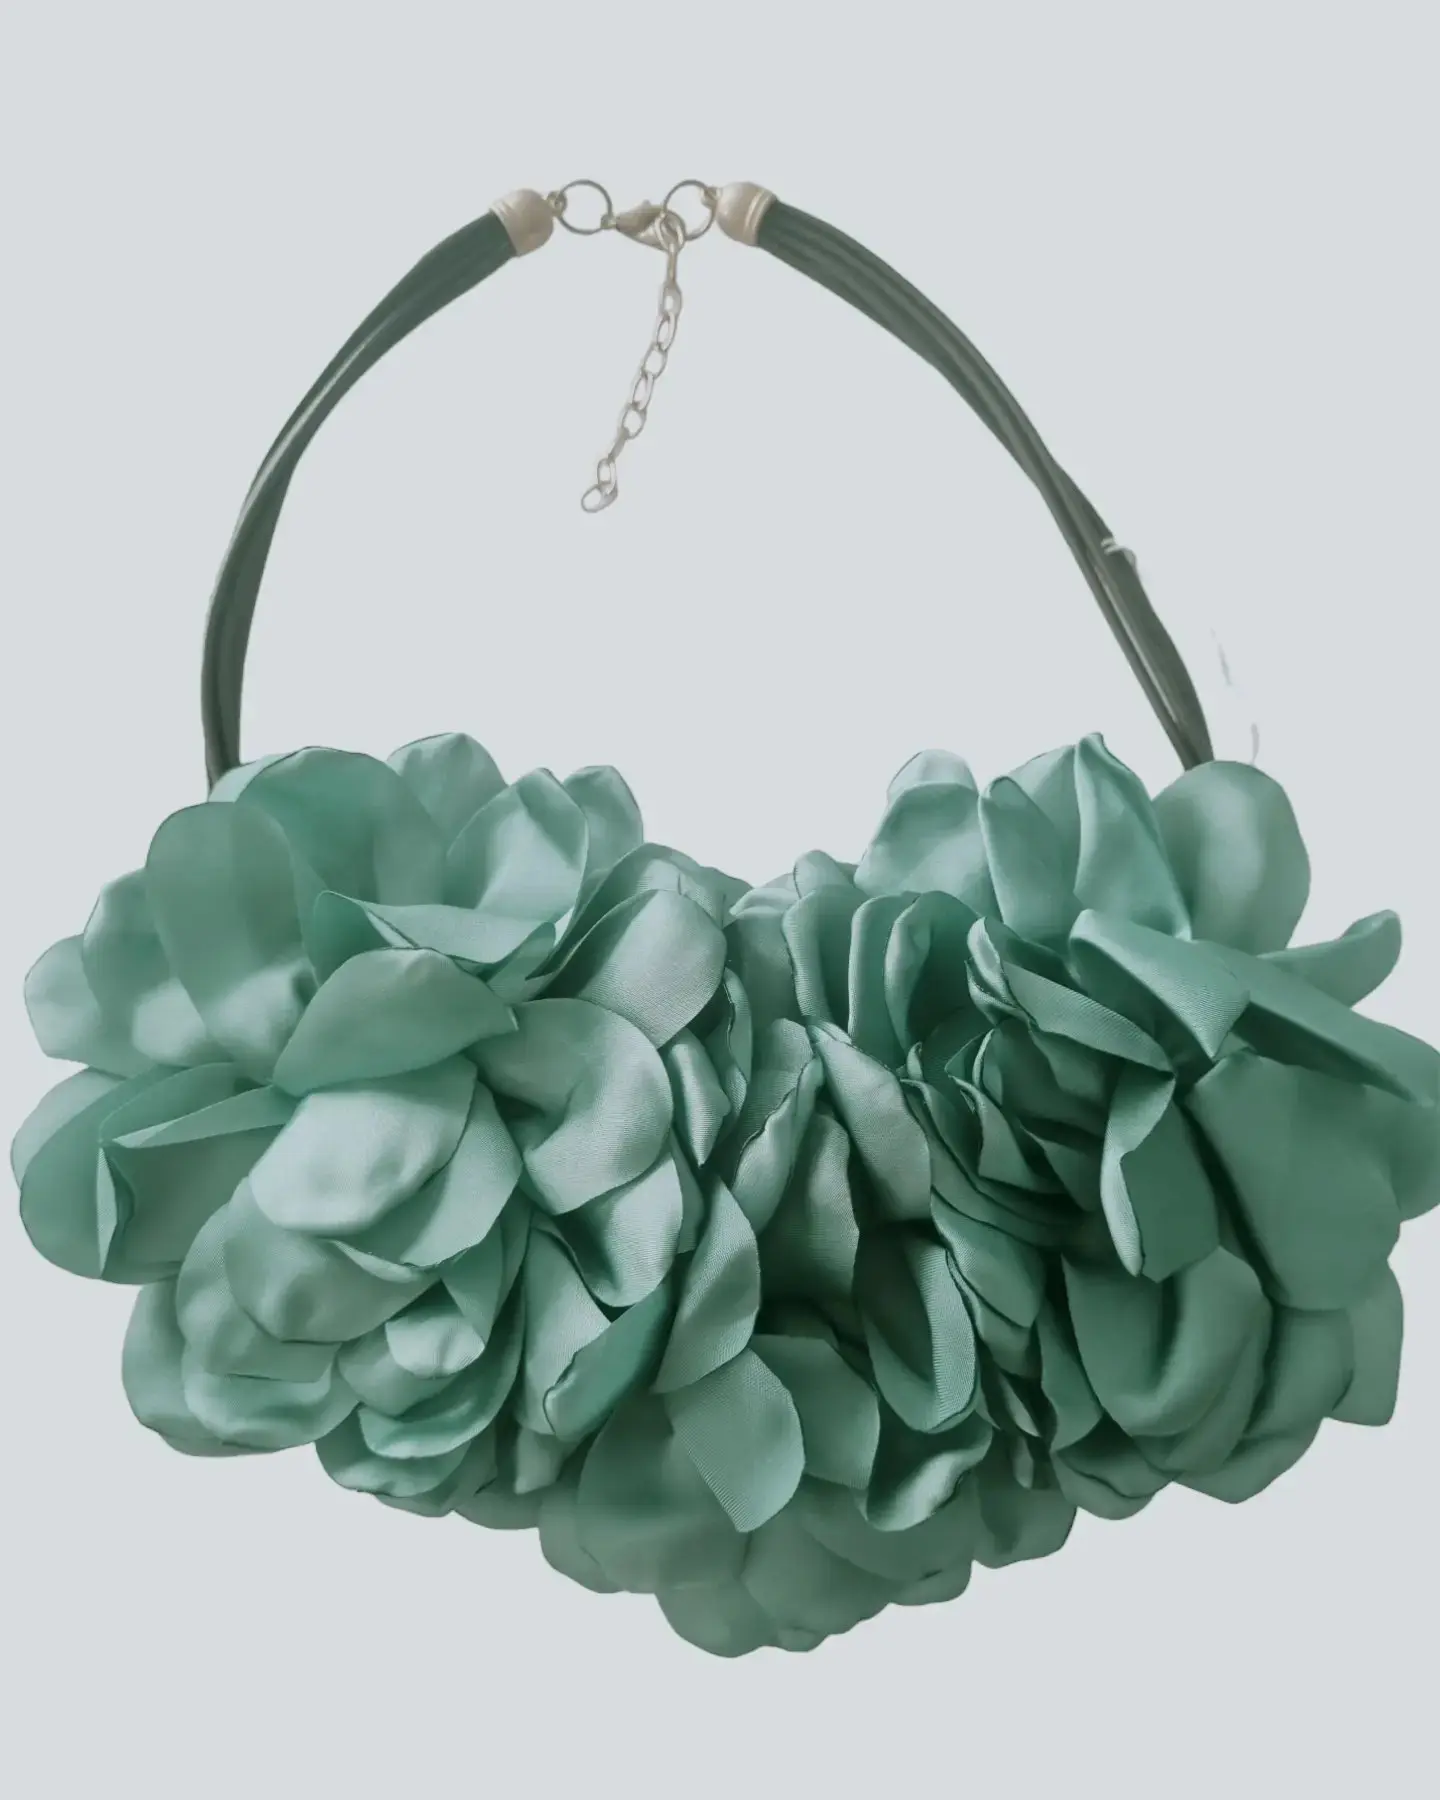 Collier ras de cou réalisé avec des fleurs en tissu. Longueur réglable 58cm Coloris vert